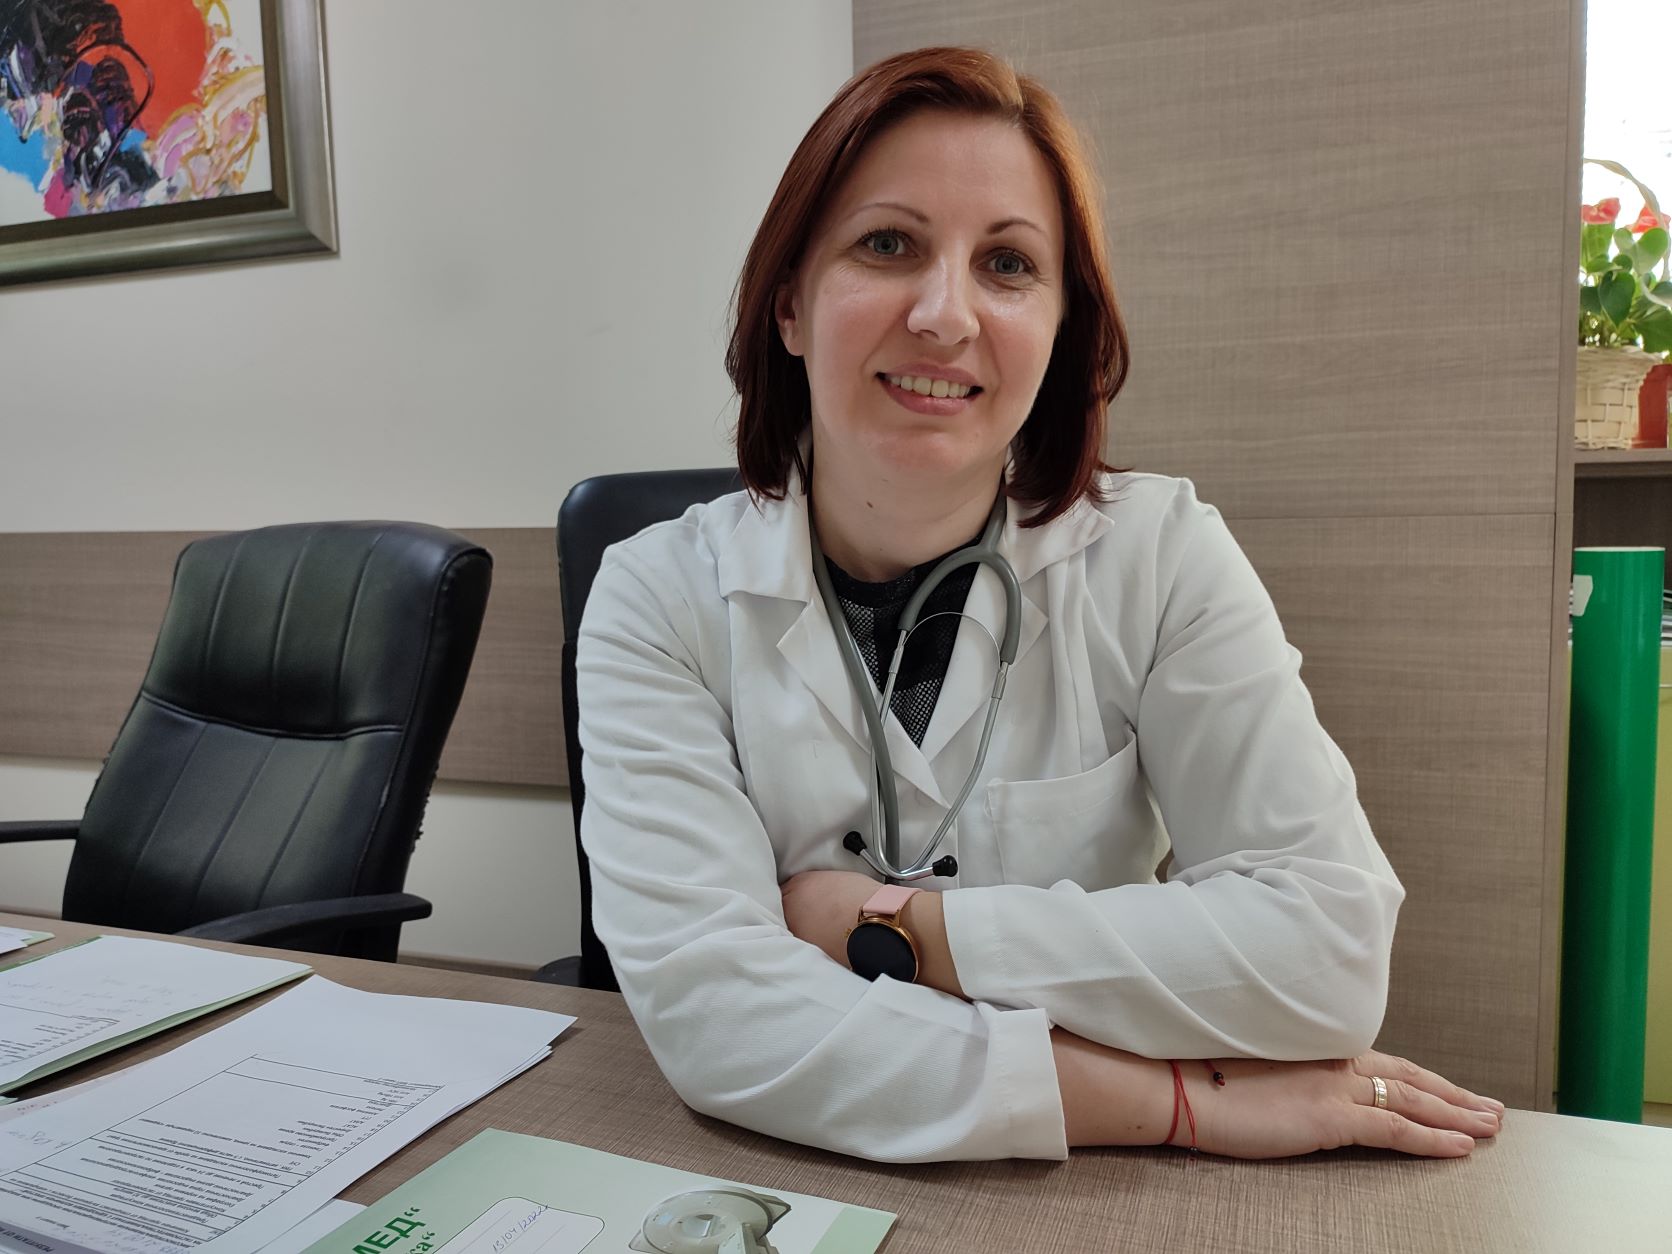 Д-р Елена Цолова, невролог в УМБАЛ и ДКЦ „Софиямед“: Световъртежът не трябва да се подценява. Консултацията с лекар е задължителна